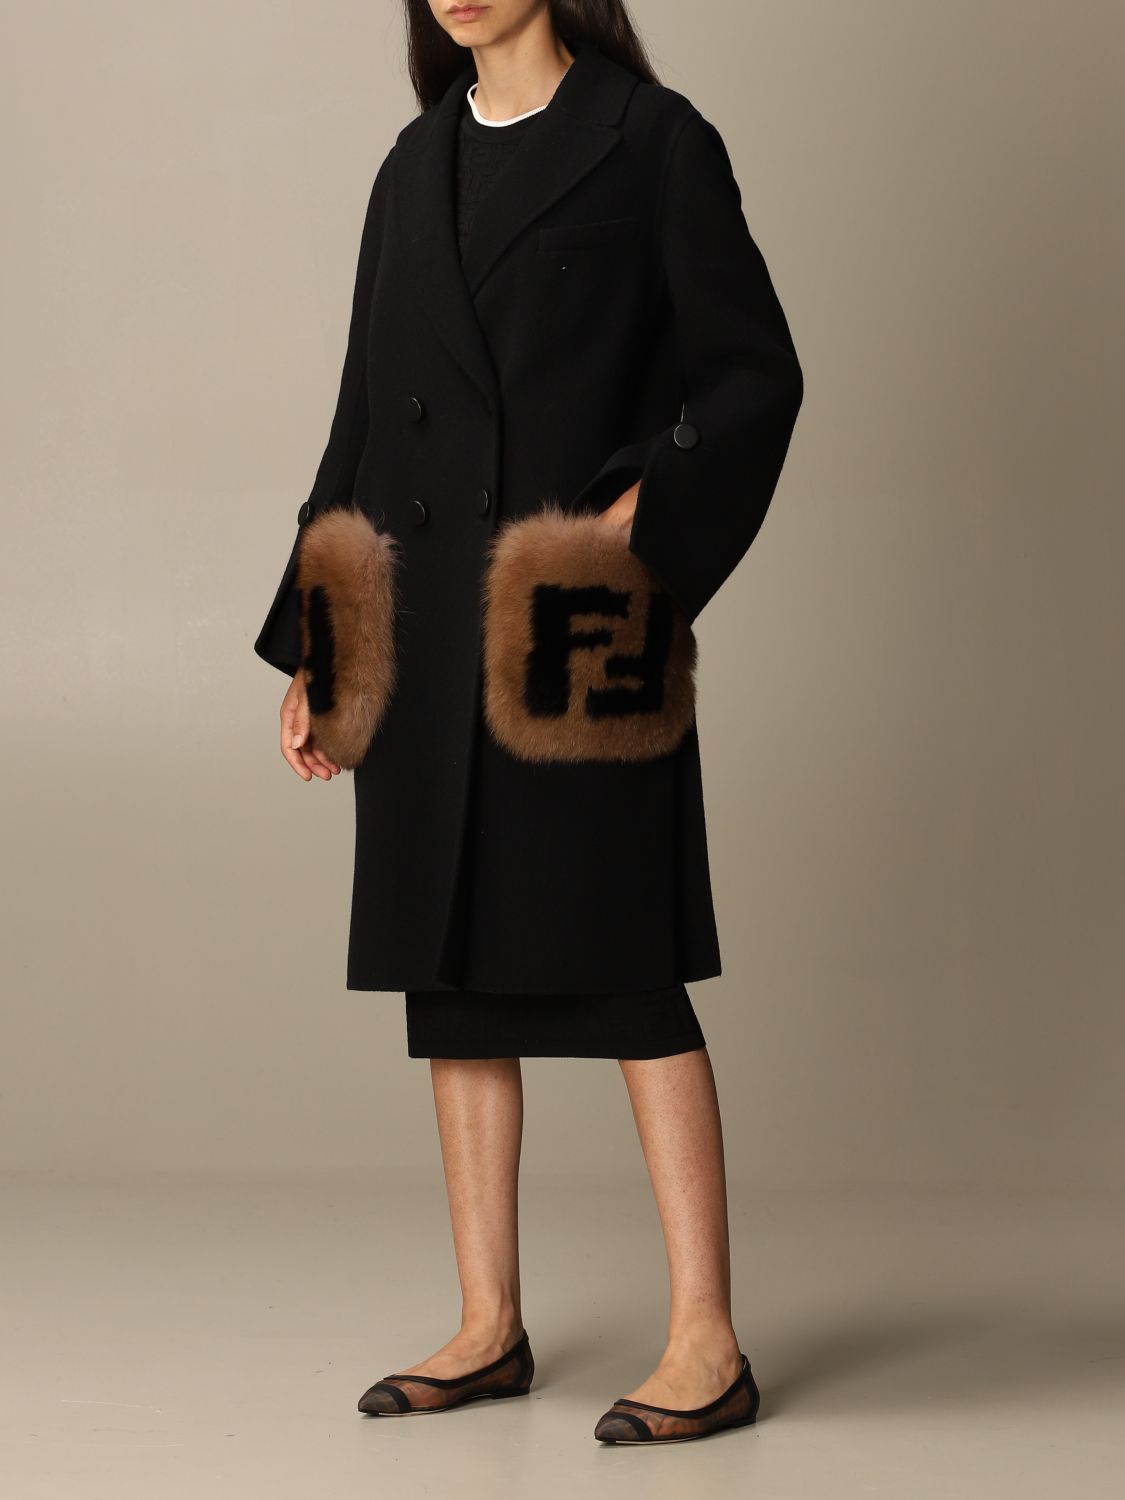 Actualizar 118+ imagen fendi coat with fur pockets - financieratpv.com.mx